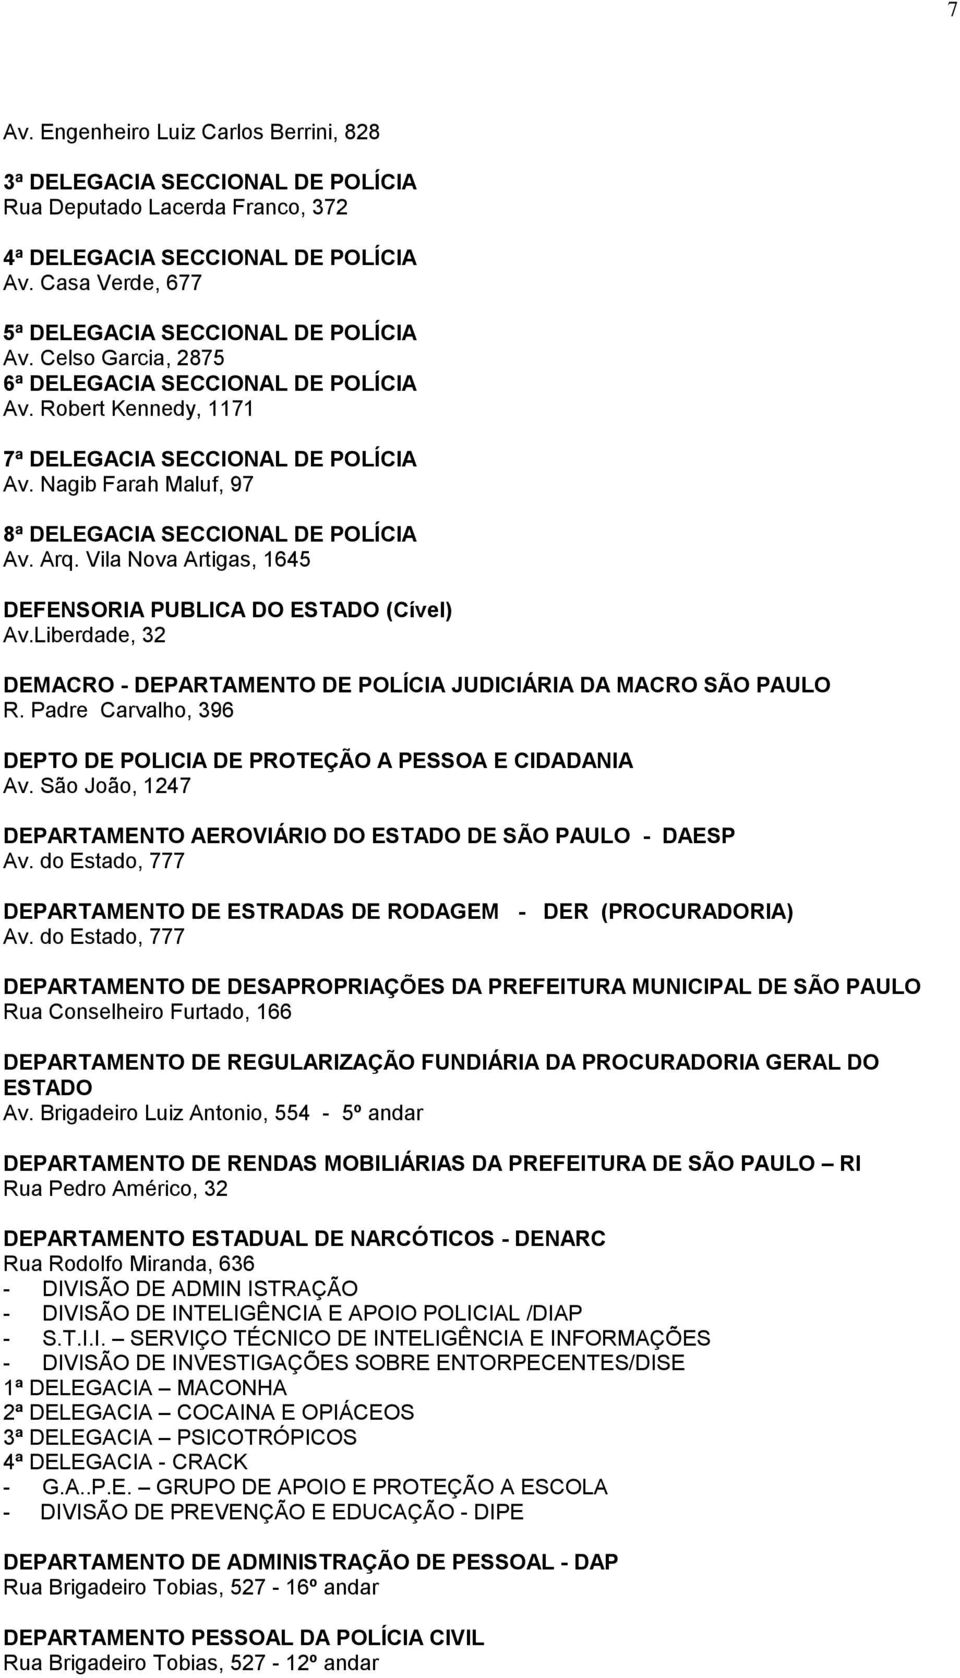 Vila Nova Artigas, 1645 DEFENSORIA PUBLICA DO ESTADO (Cível) Av.Liberdade, 32 DEMACRO - DEPARTAMENTO DE POLÍCIA JUDICIÁRIA DA MACRO SÃO PAULO R.